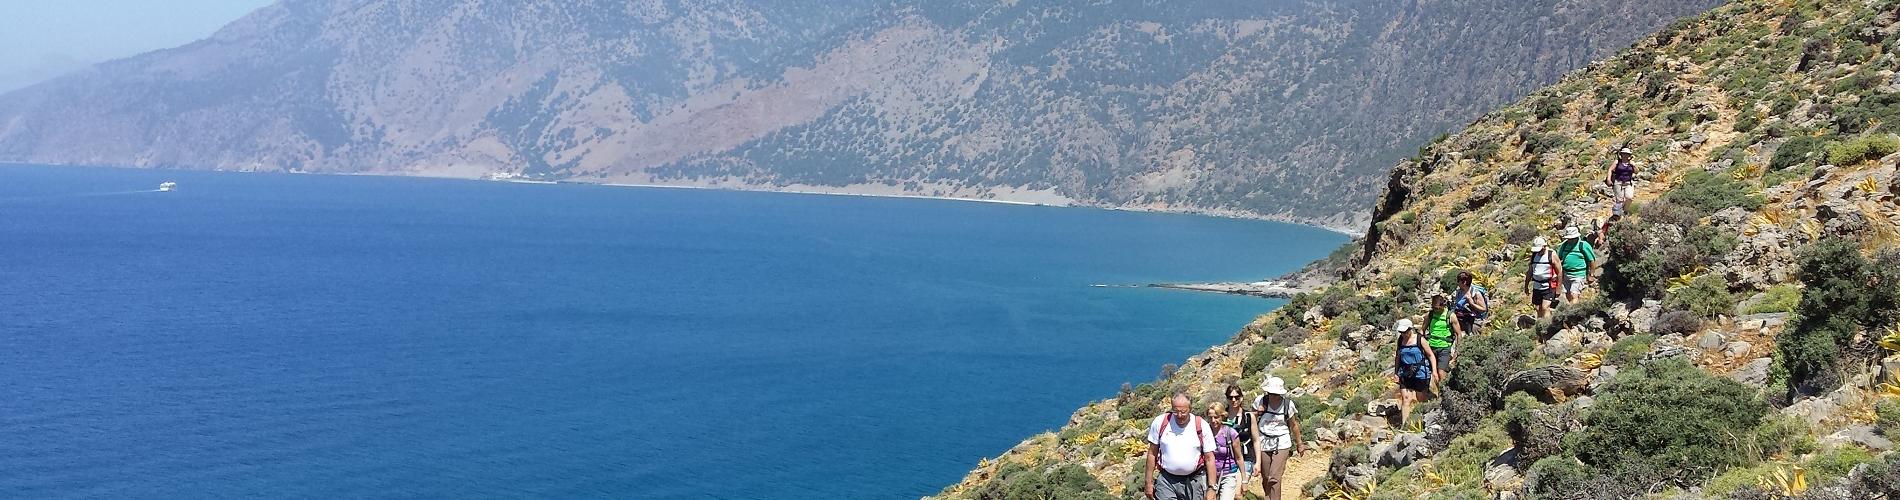 voyages aventure Crete: randonnees pedestres